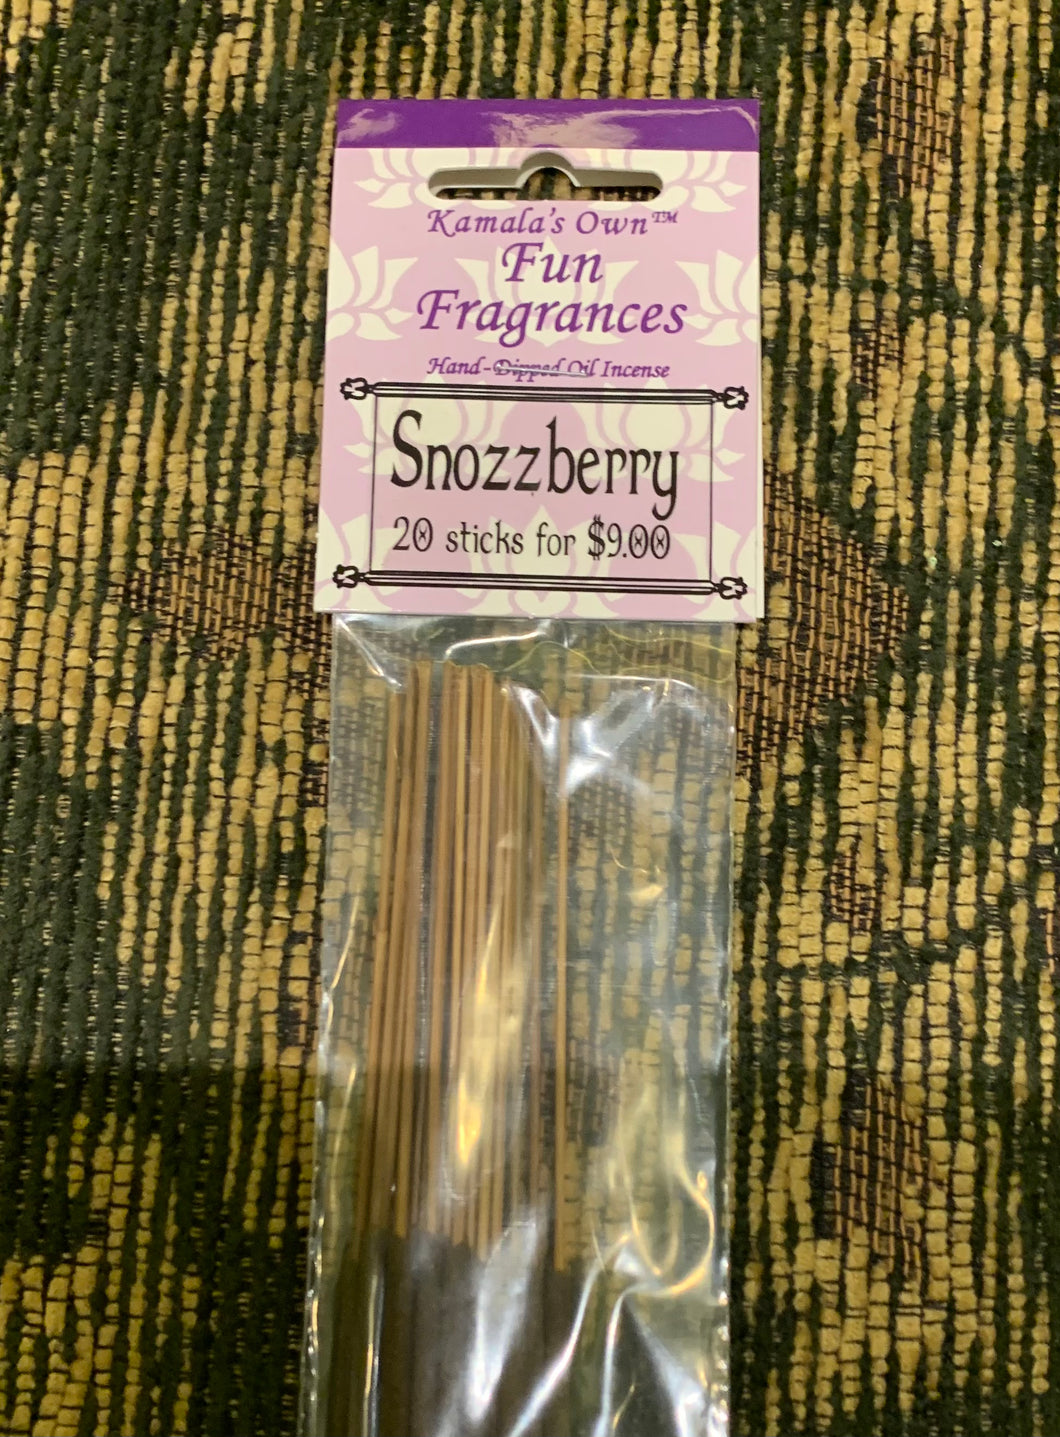 Snozzberry sticks